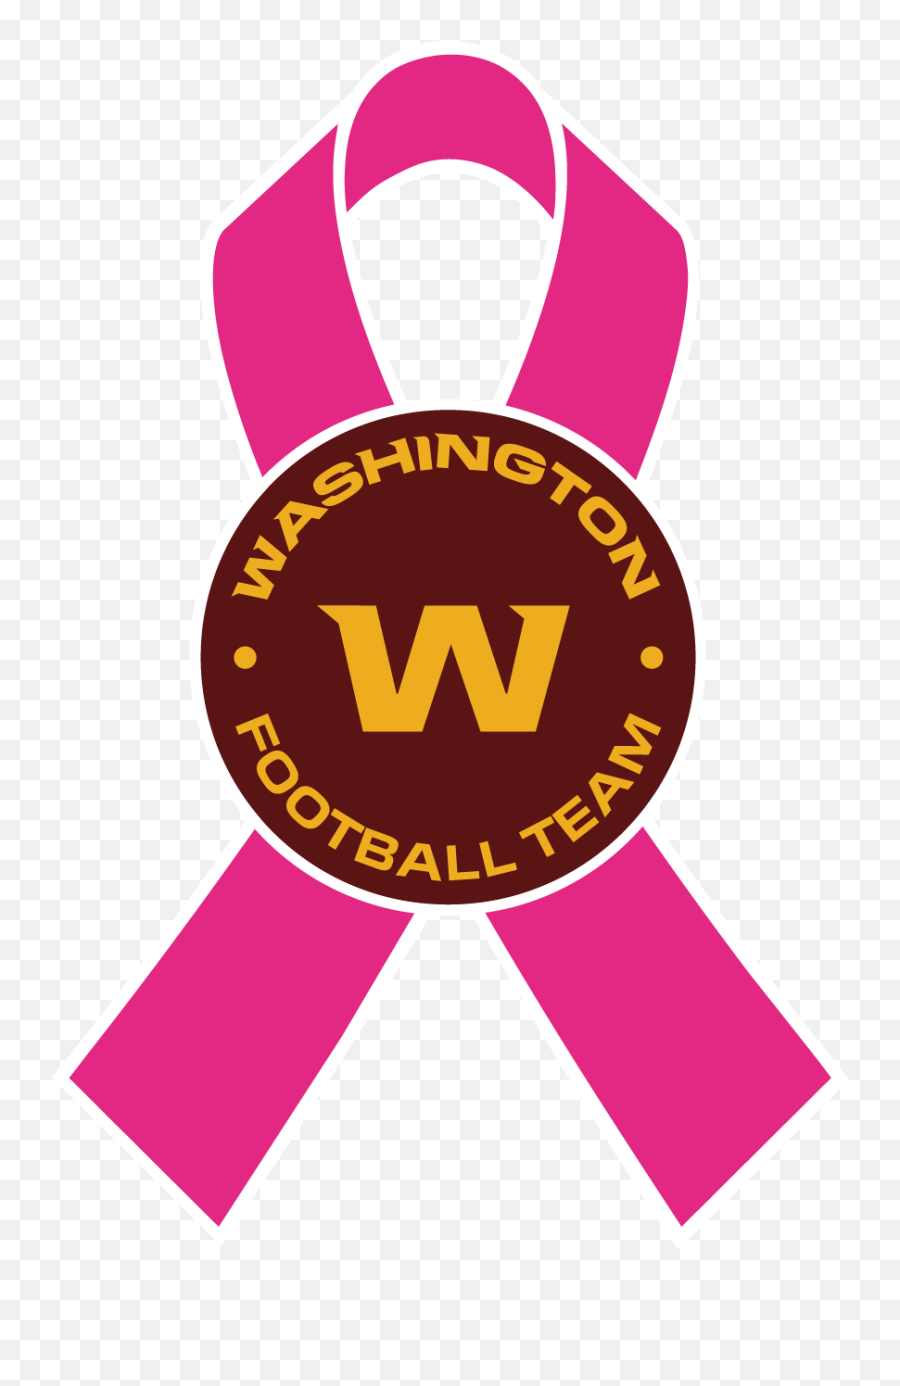 Think Pink Washington Football Team - Washingtonfootballcom Washington Football Team Breast Cancer Awareness Emoji,Pink Safari Logo